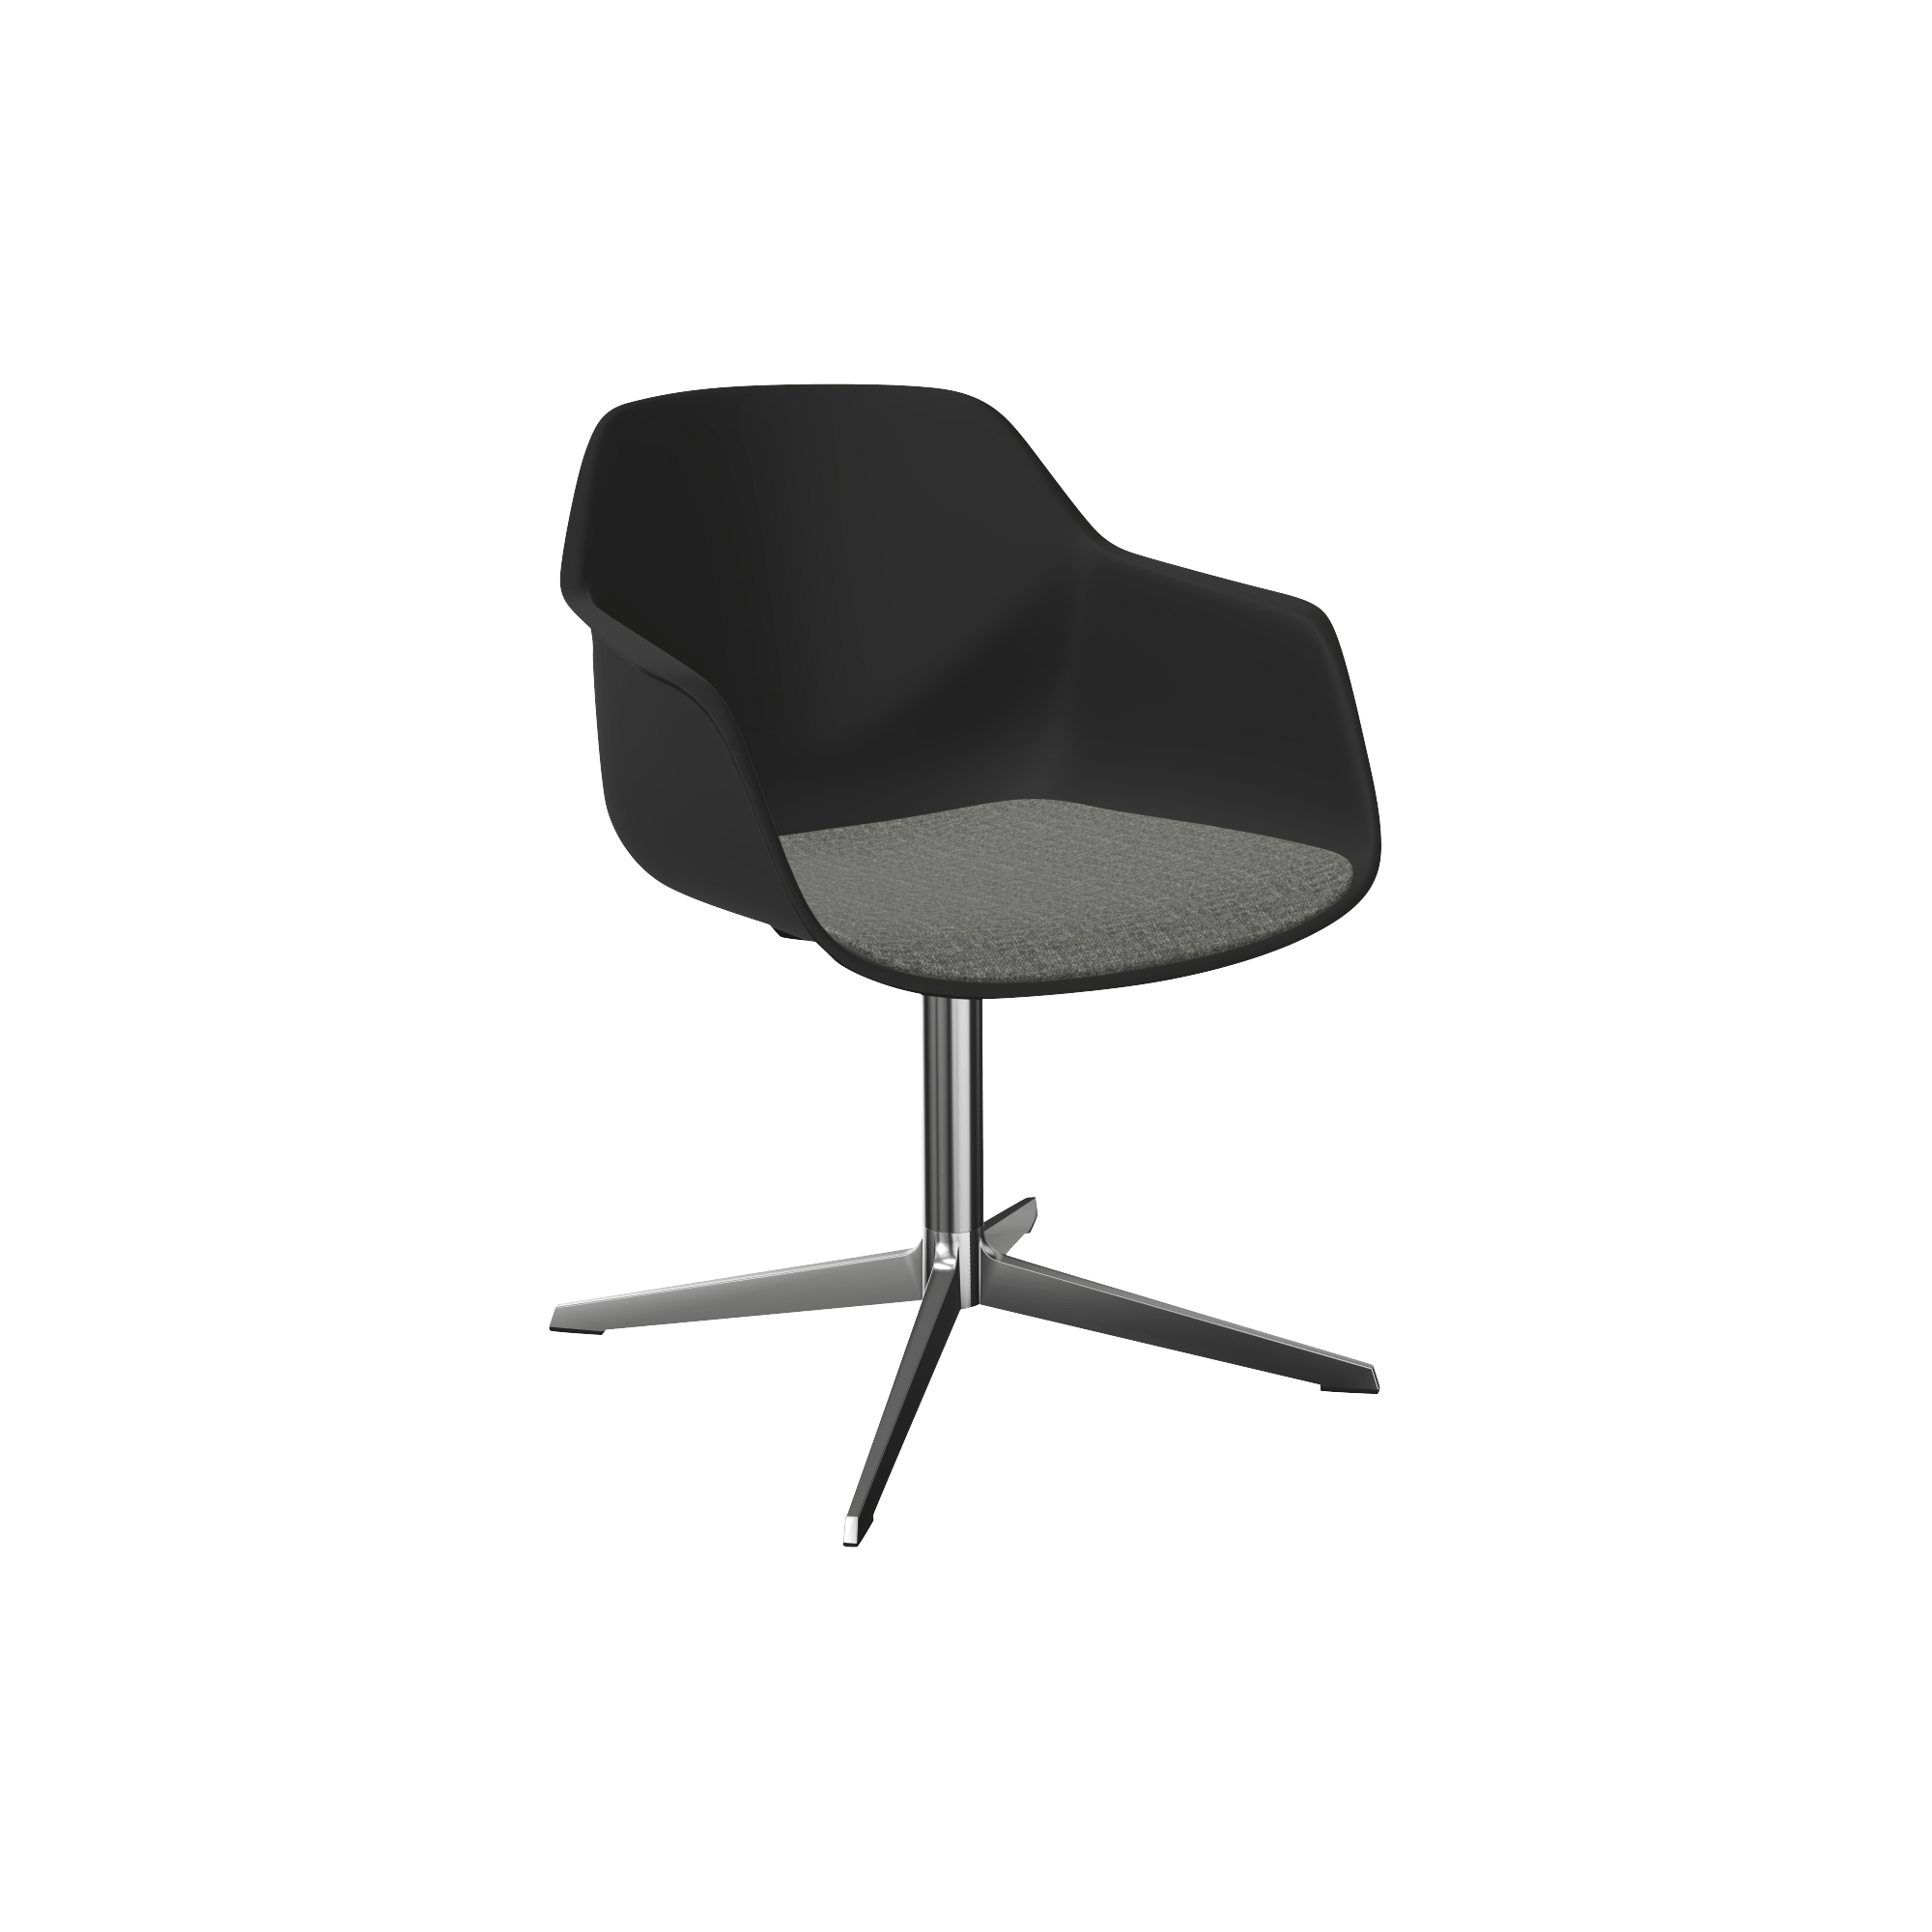 A black swivel chair